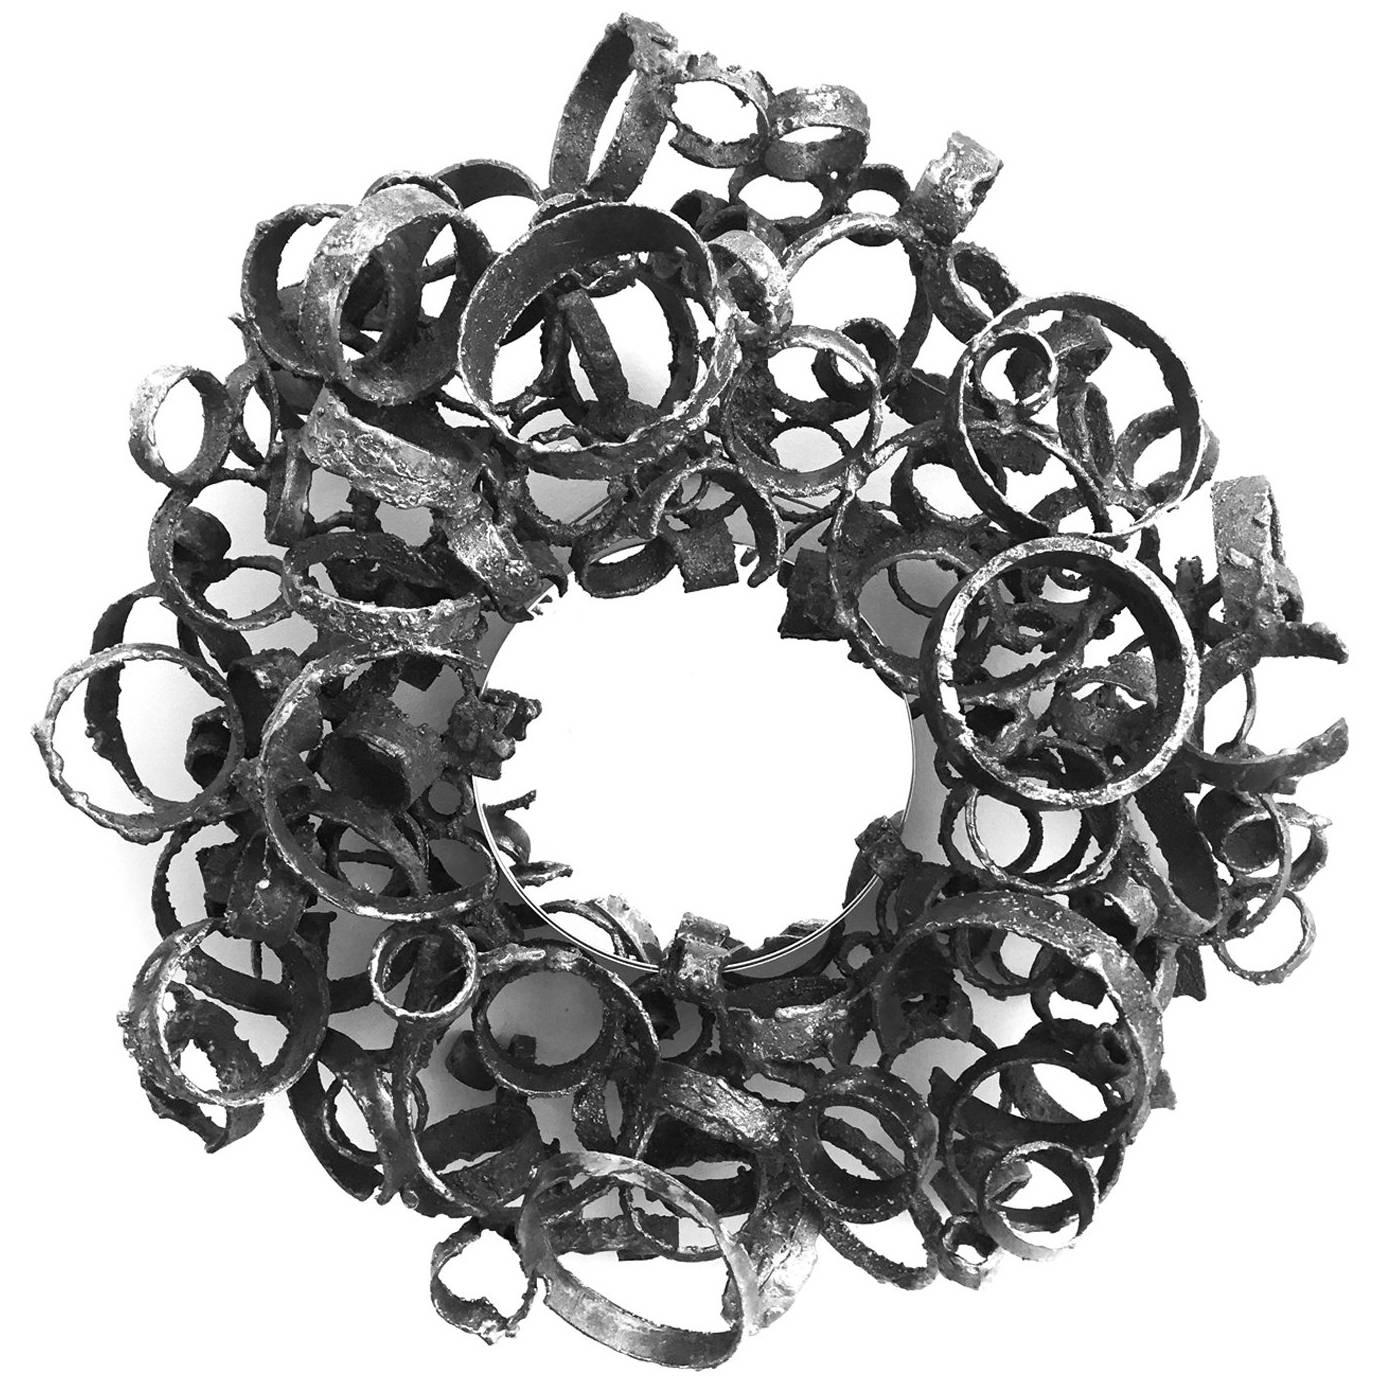 Torch-Cut Welded Steel Ring Mirror by James Bearden